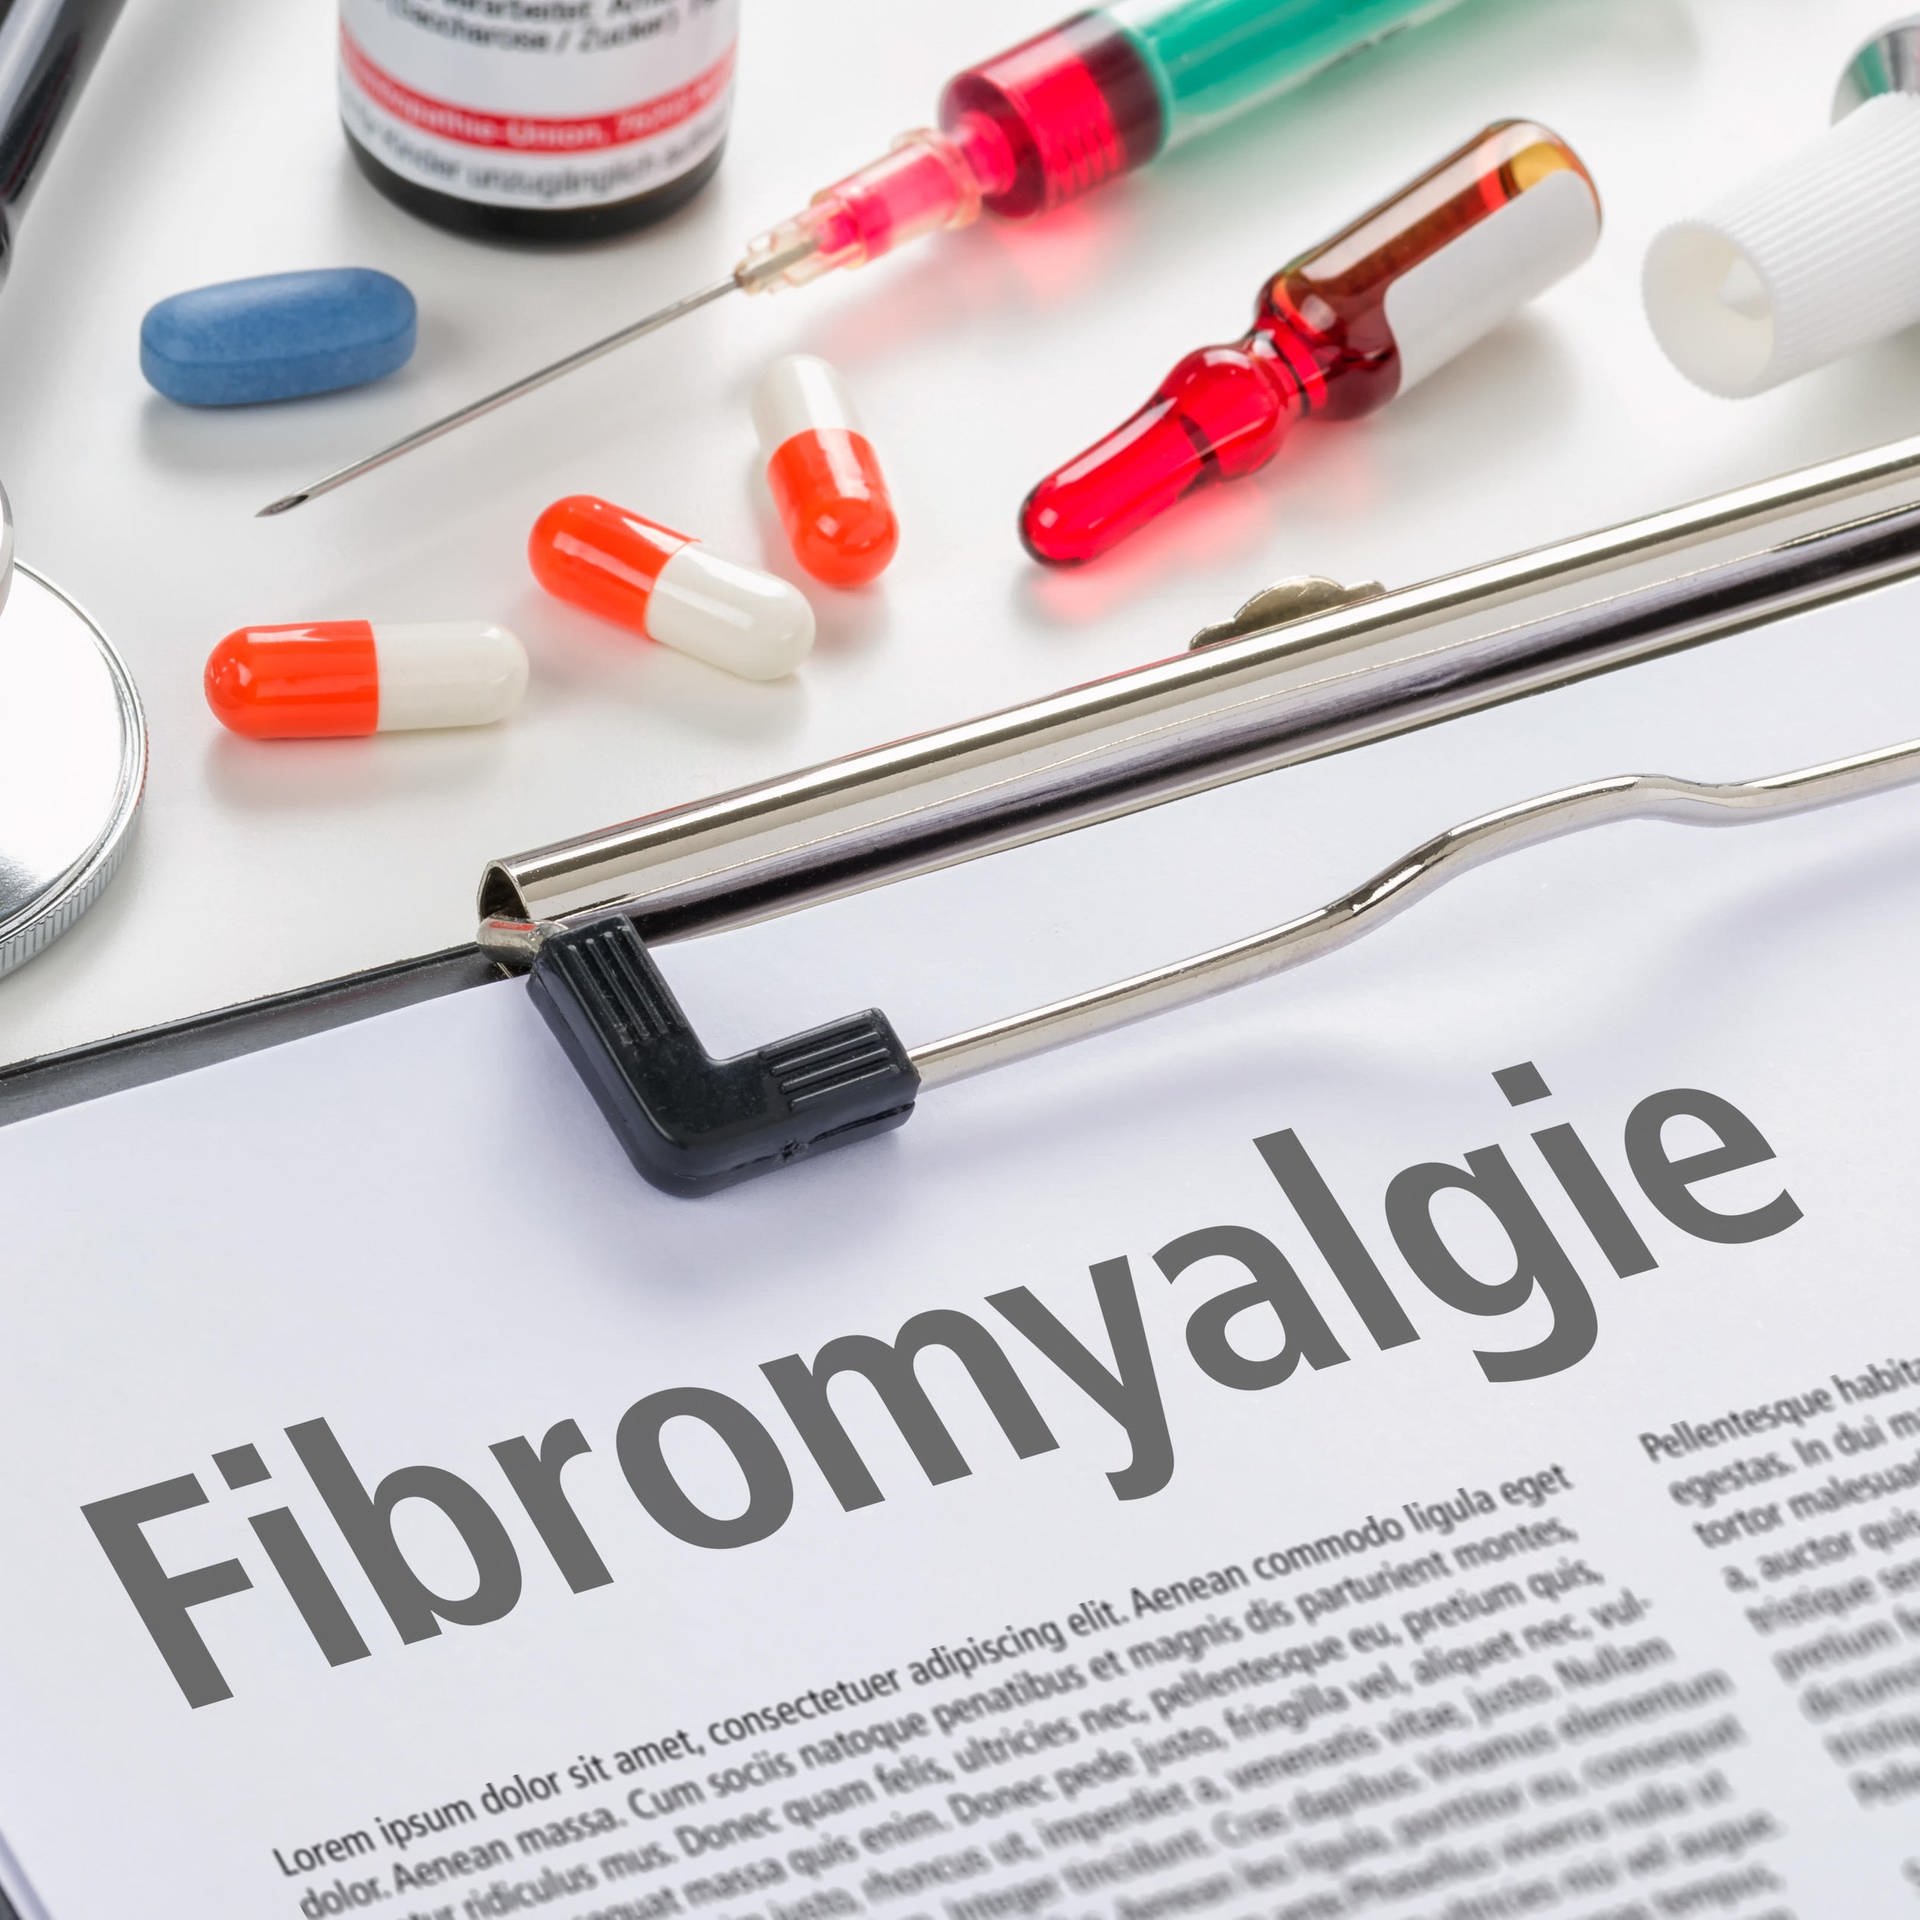 Fibromyalgie – Der unverstandene Schmerz